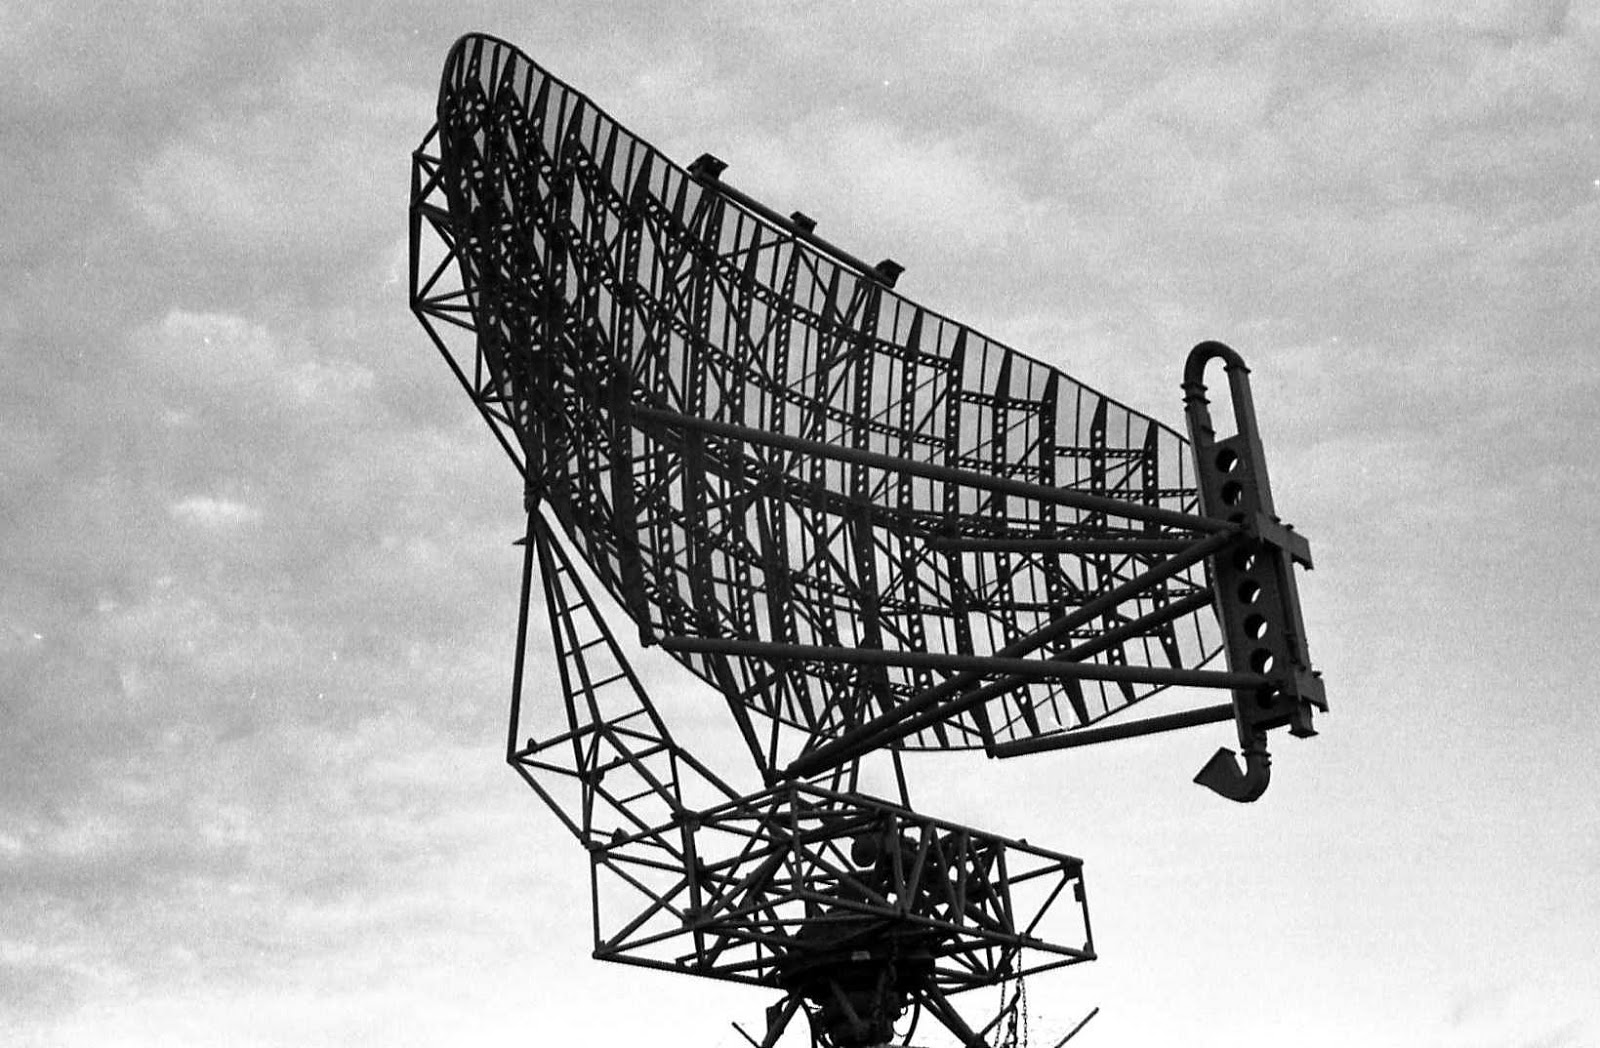 Mengenal Radar: Pengertian dan Cara Kerjanya - Cara Kerja